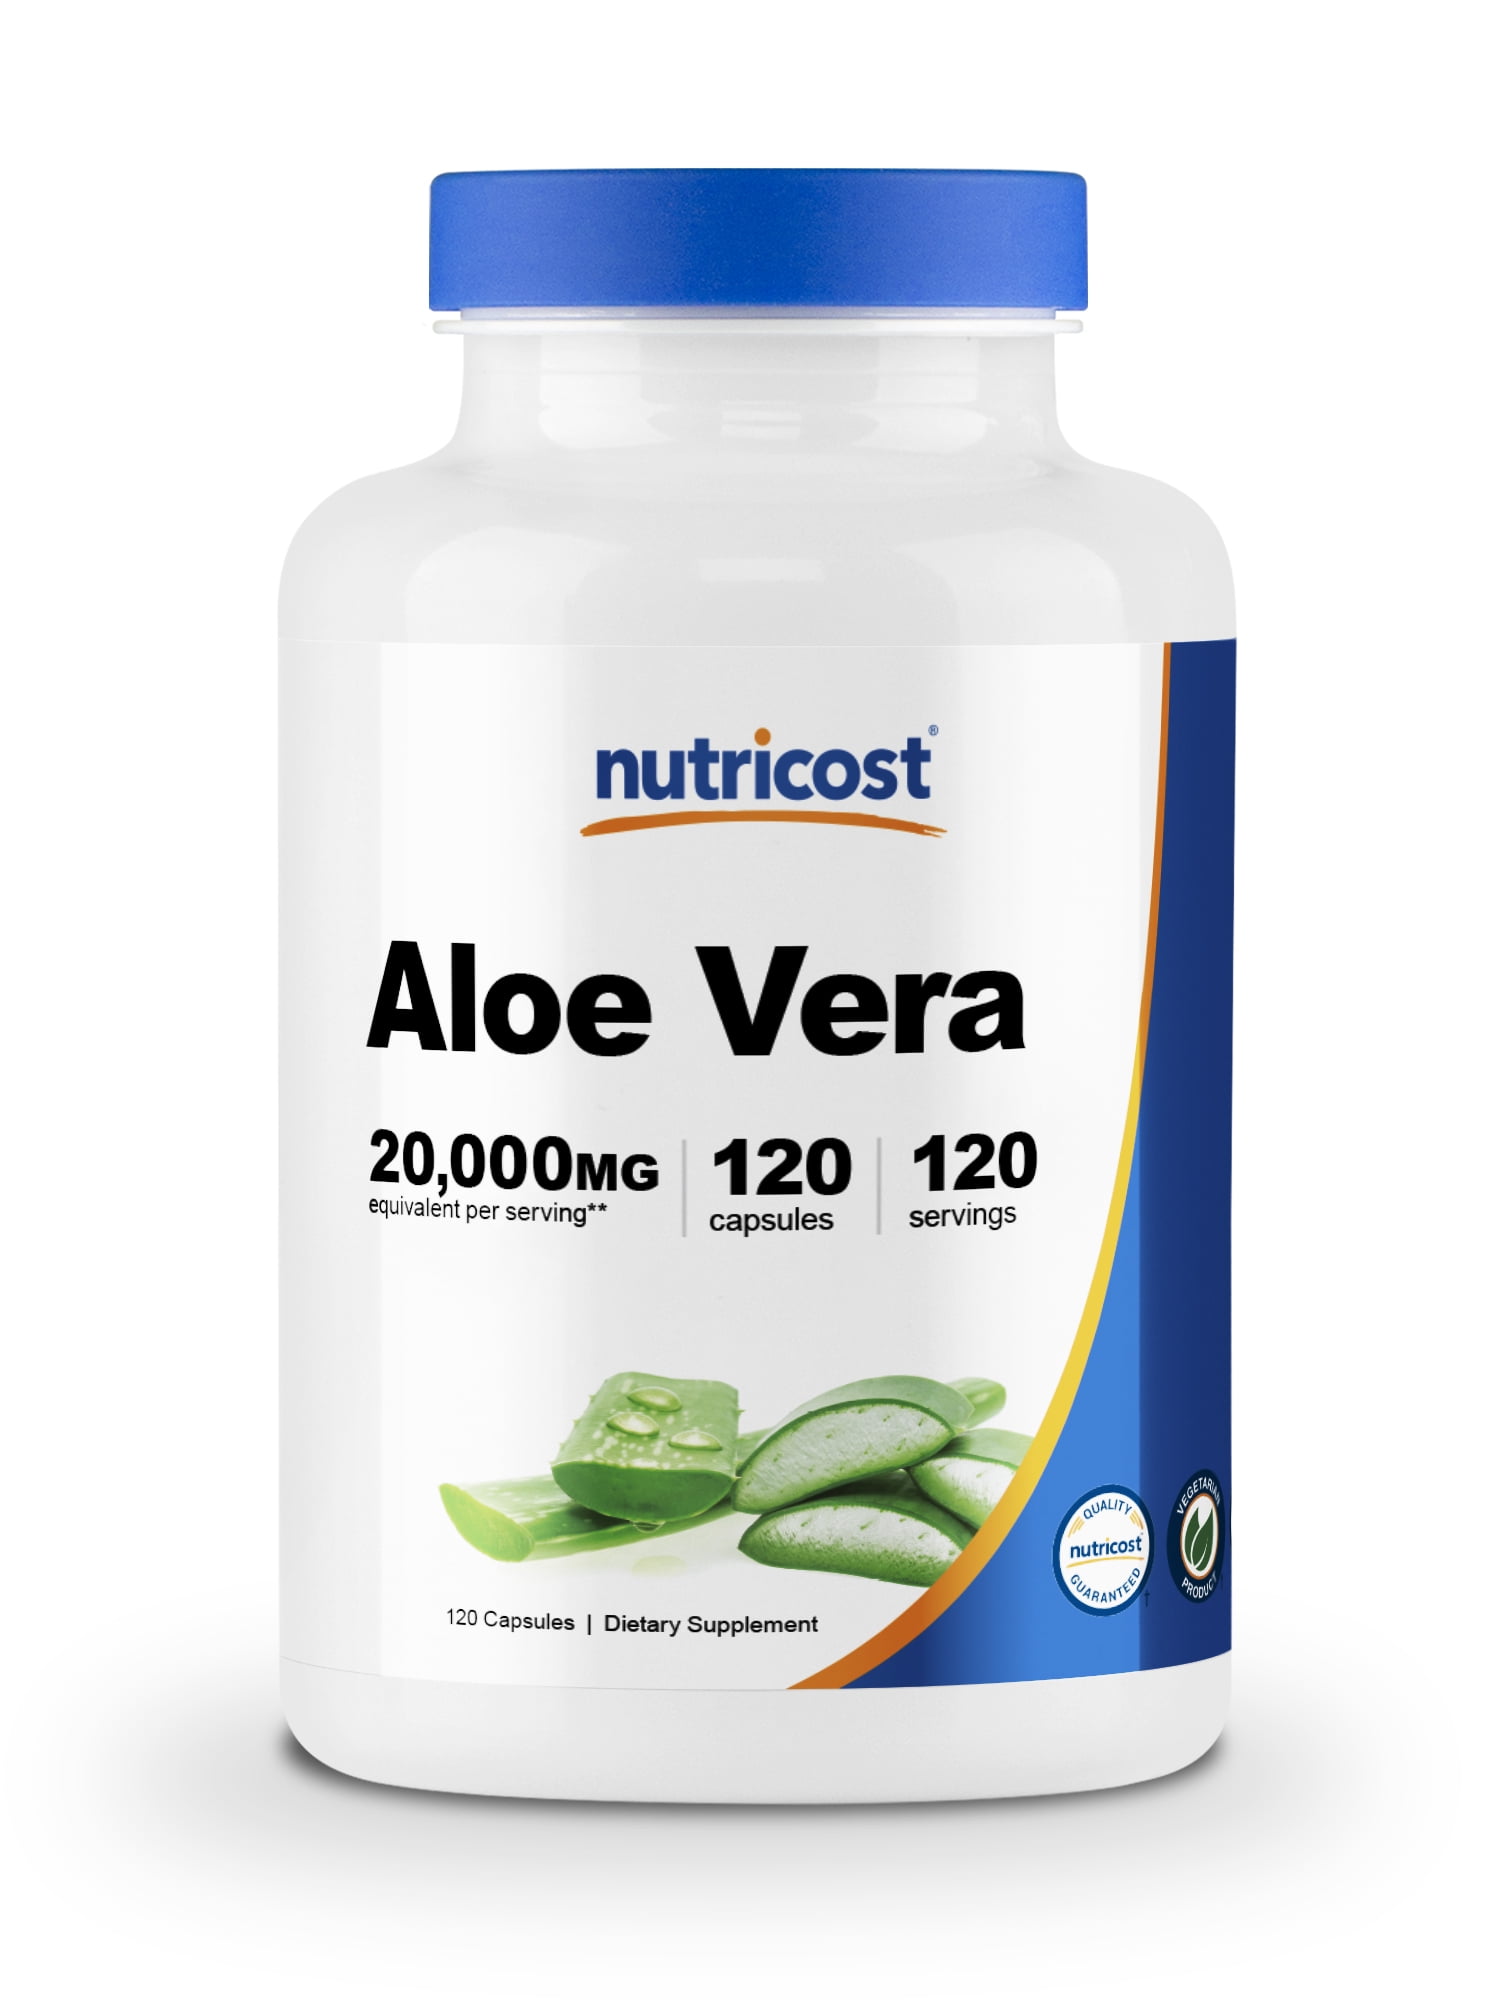 Nutricost Aloe Vera 120 - Gluten Free, Non-GMO, Vegetarian Friendly - Walmart.com